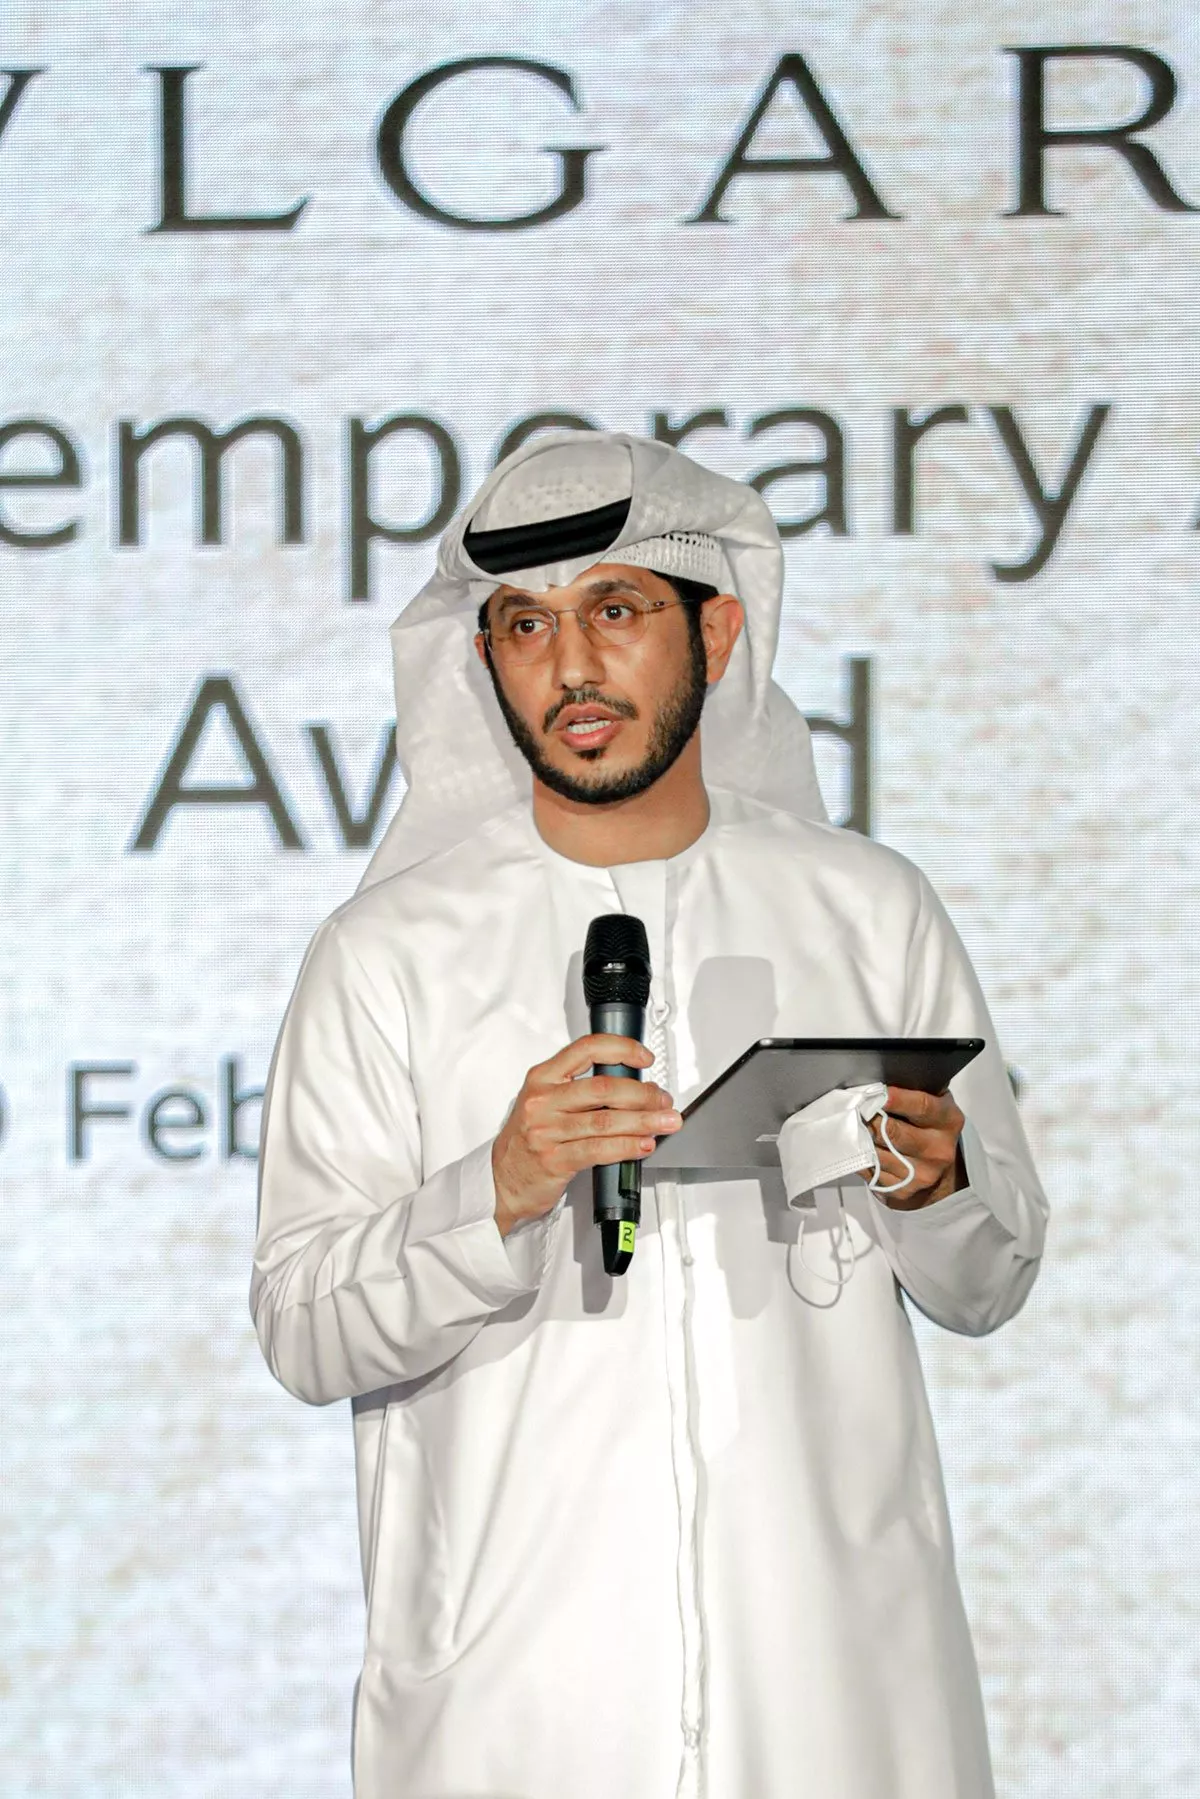 دبي للثقافة وبولغري تنظمان معرضاً للمشاركين في جائزة بولغري للفن المعاصر